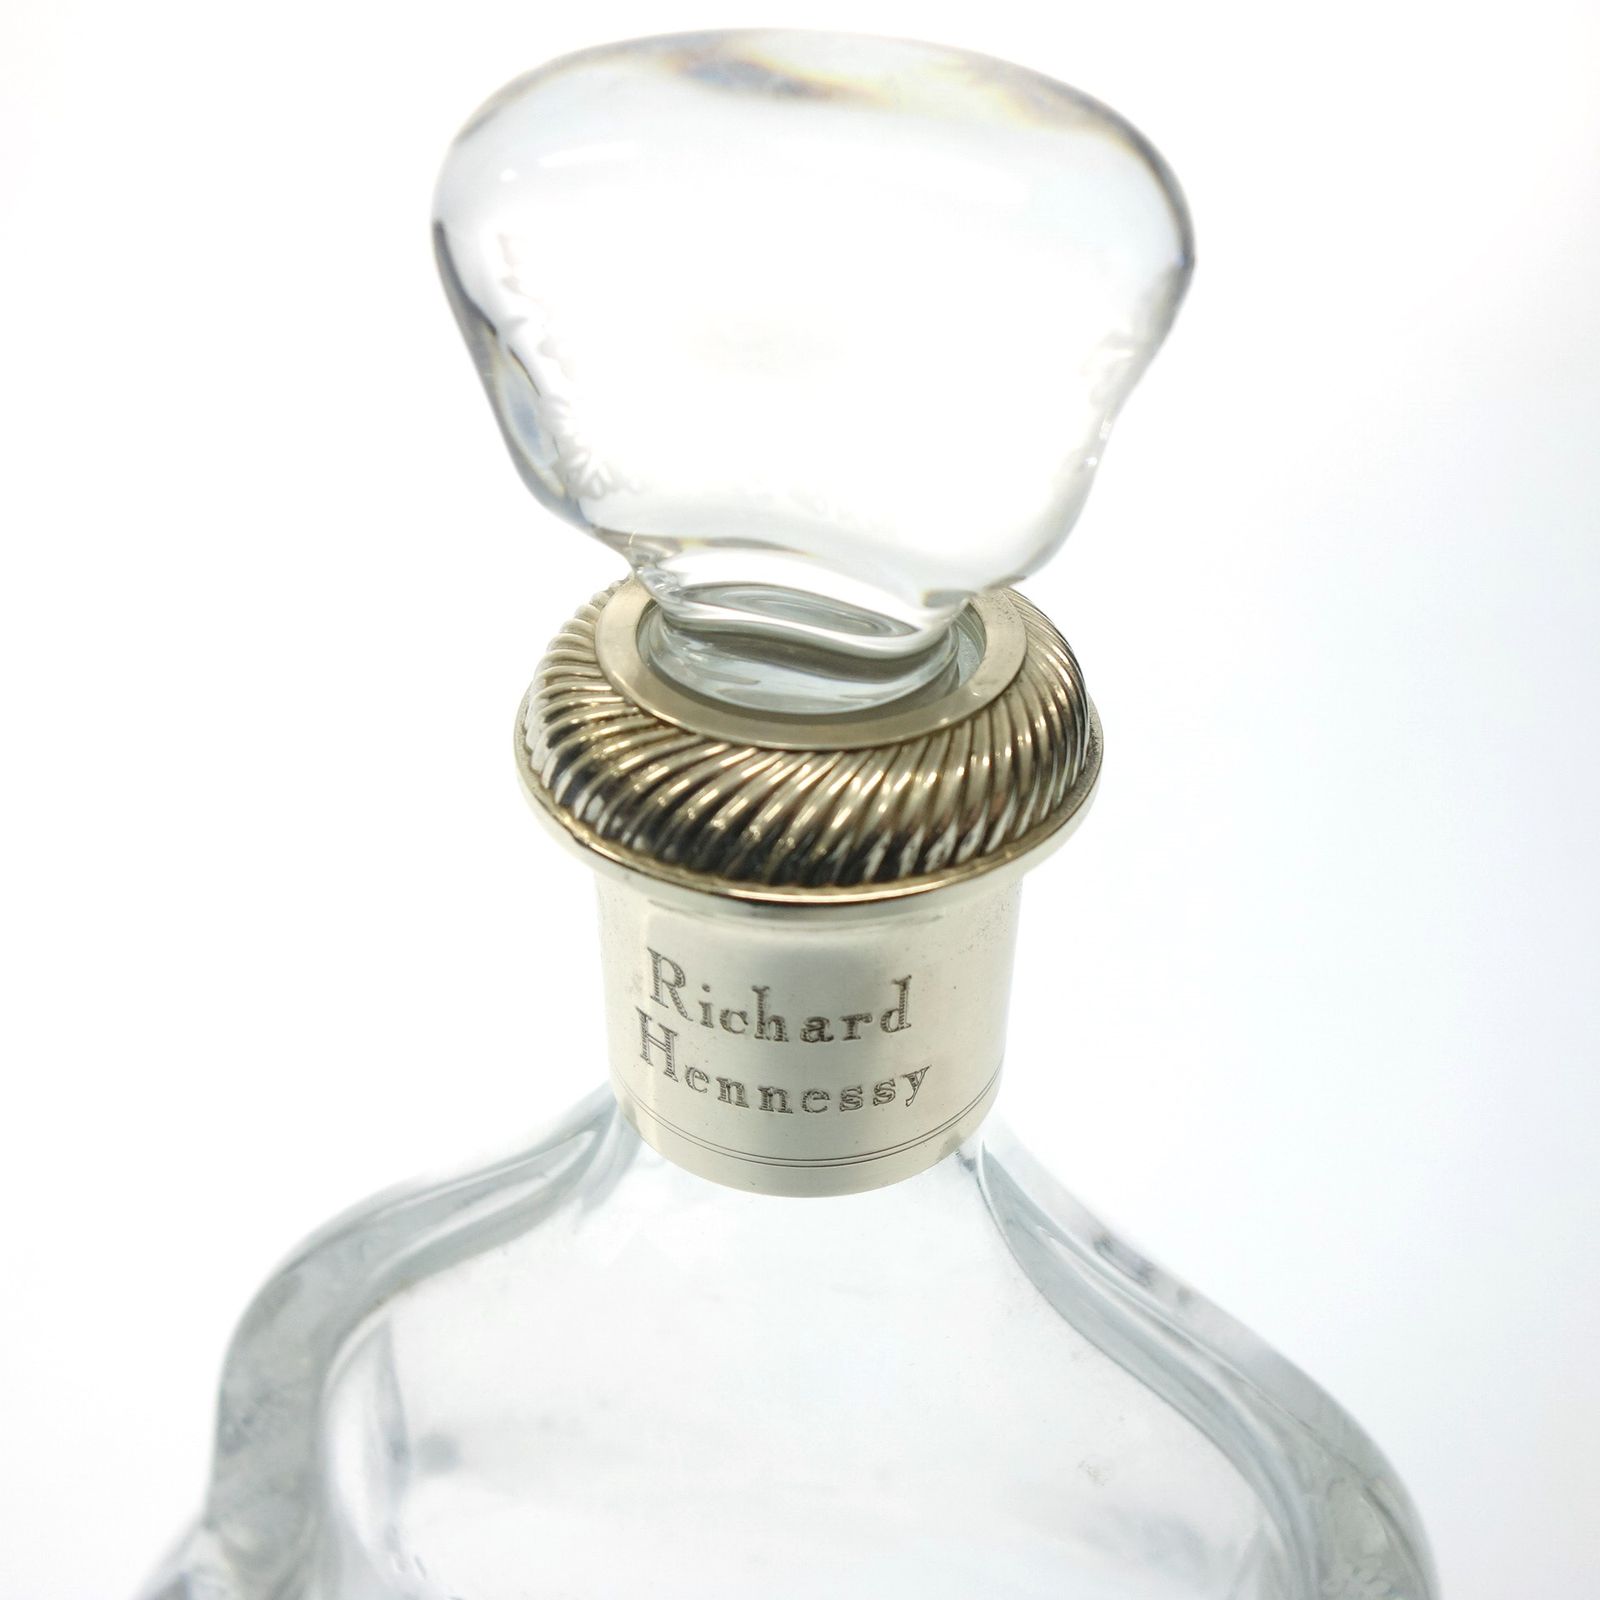 ヘネシー リシャール バカラボトル 700ml 空瓶 空箱【Y】 - お酒の格安